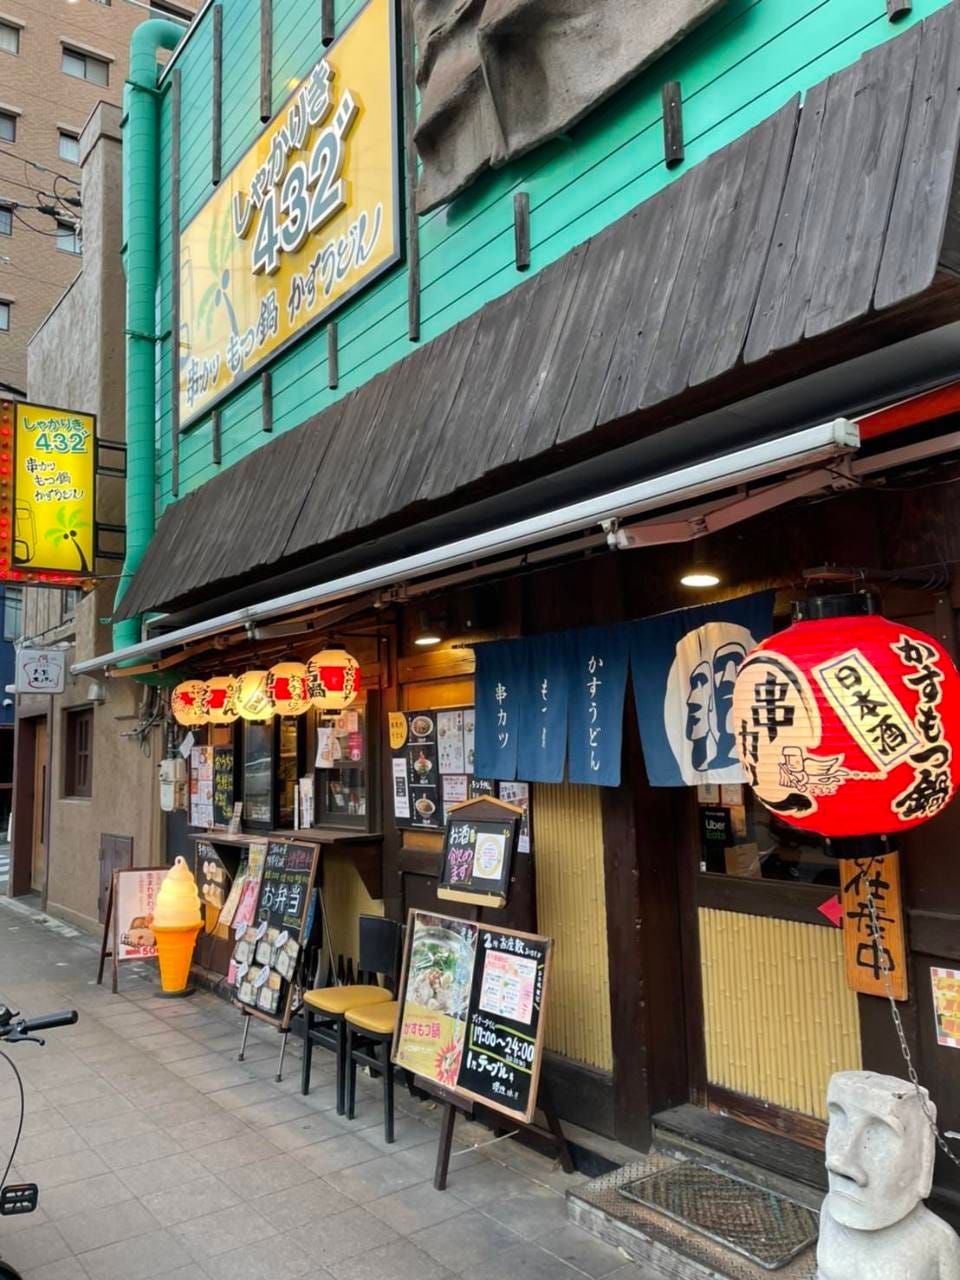 串カツともつ鍋とかすうどん居酒屋 しゃかりき432゛新福島店